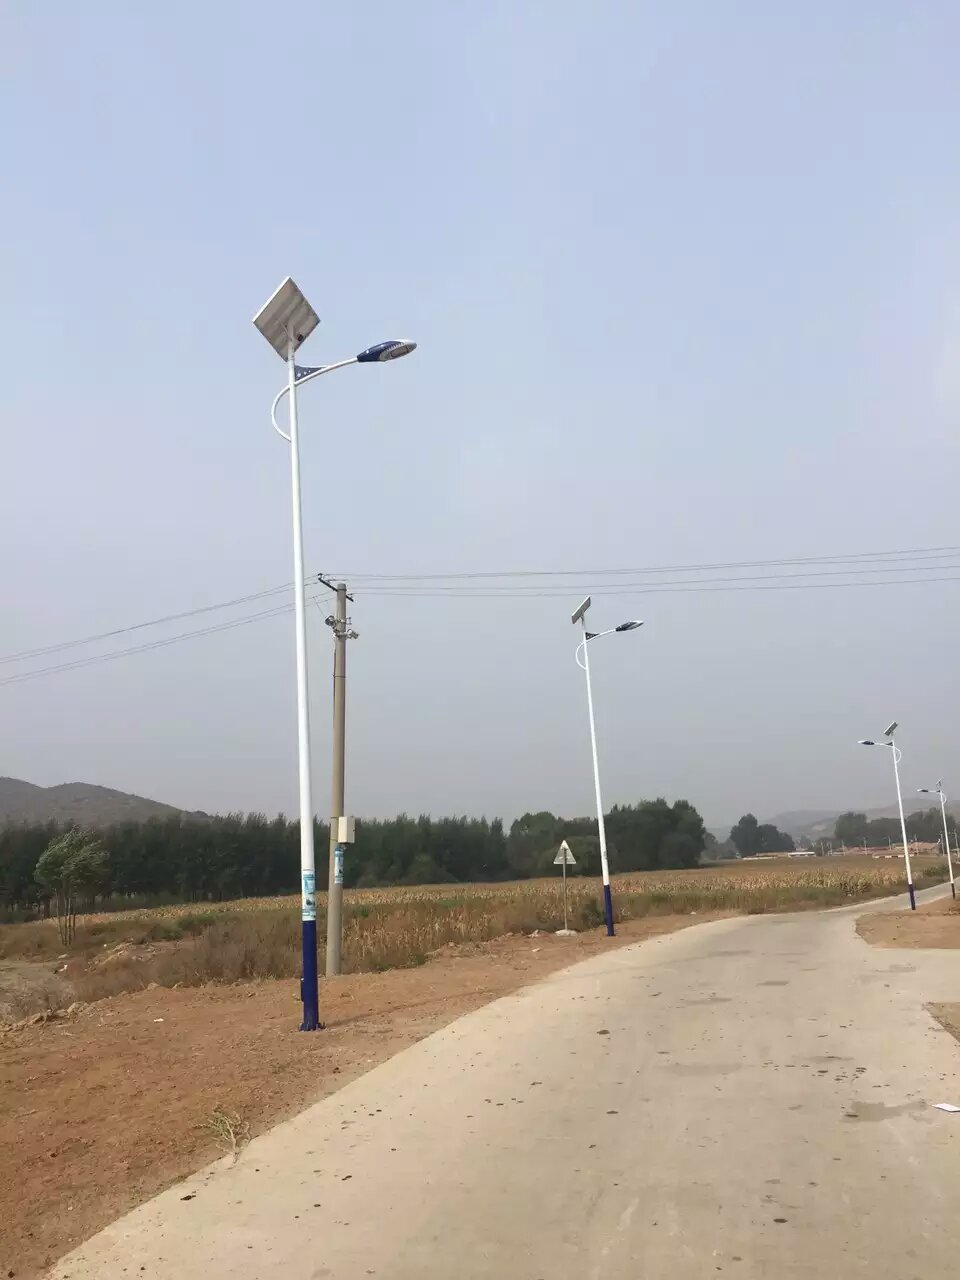 太阳能路灯|太阳能路灯-沈阳市宏耀伟业灯具制造有限公司